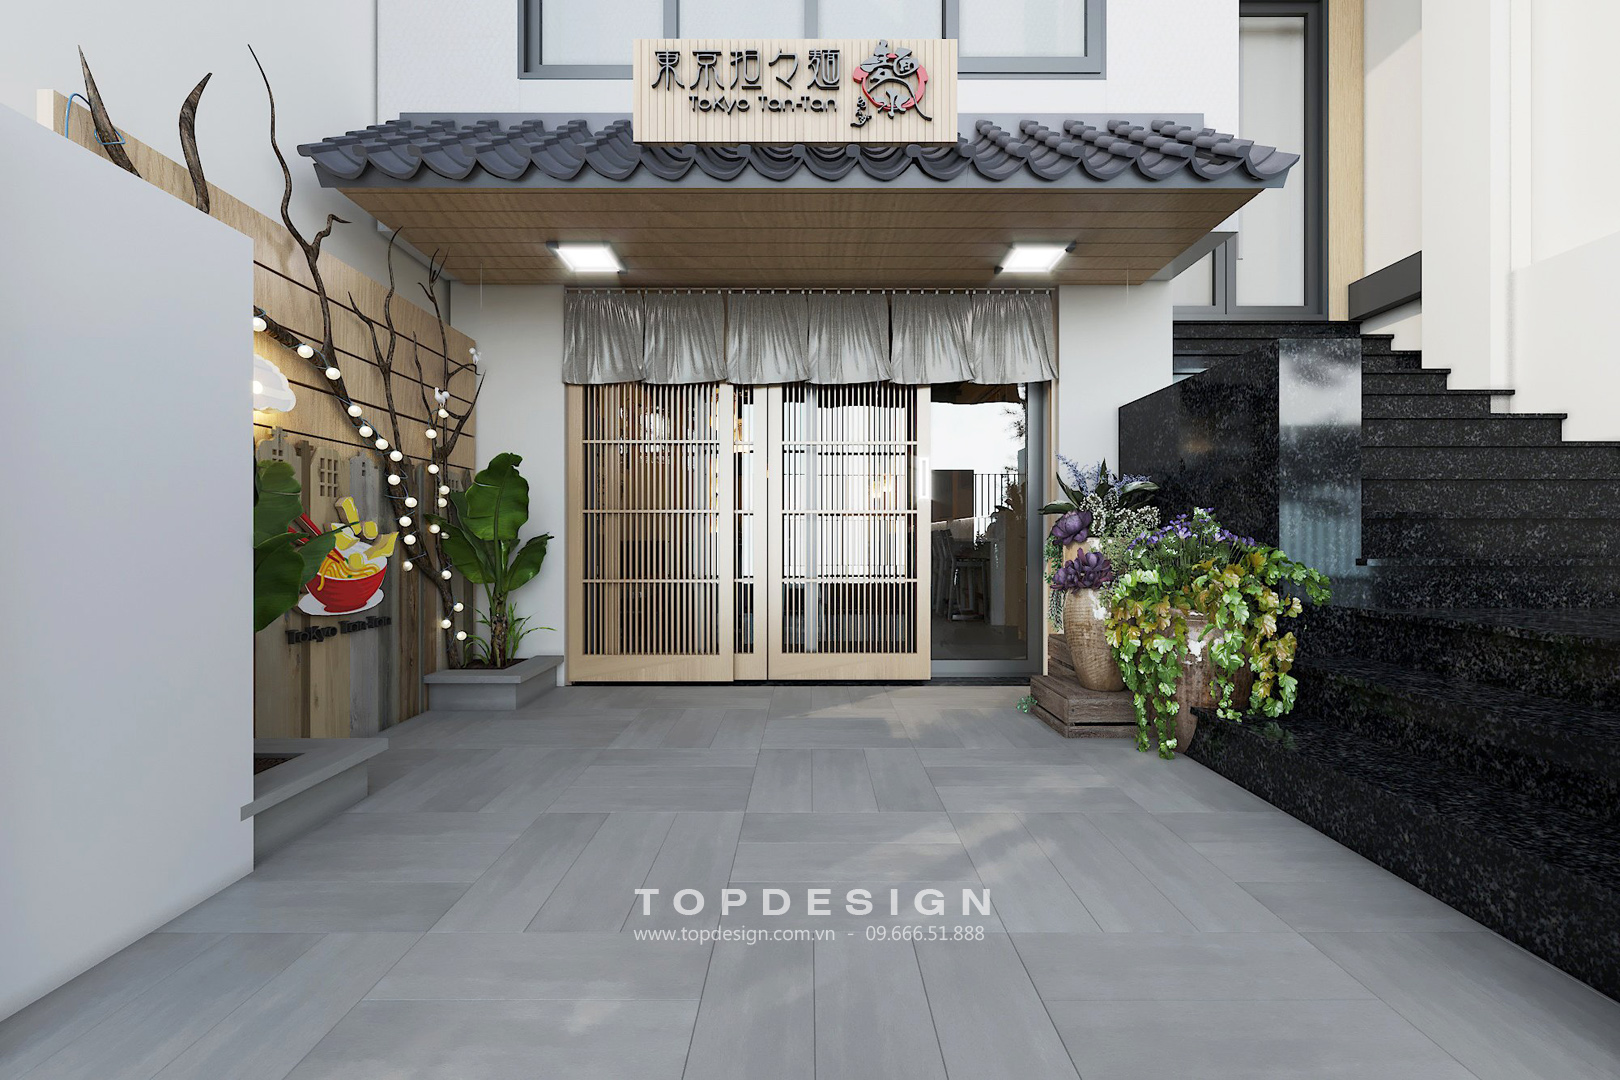 TOPDESIGN_Nhà hàng Nhật Bản_Mỳ Ramen_03